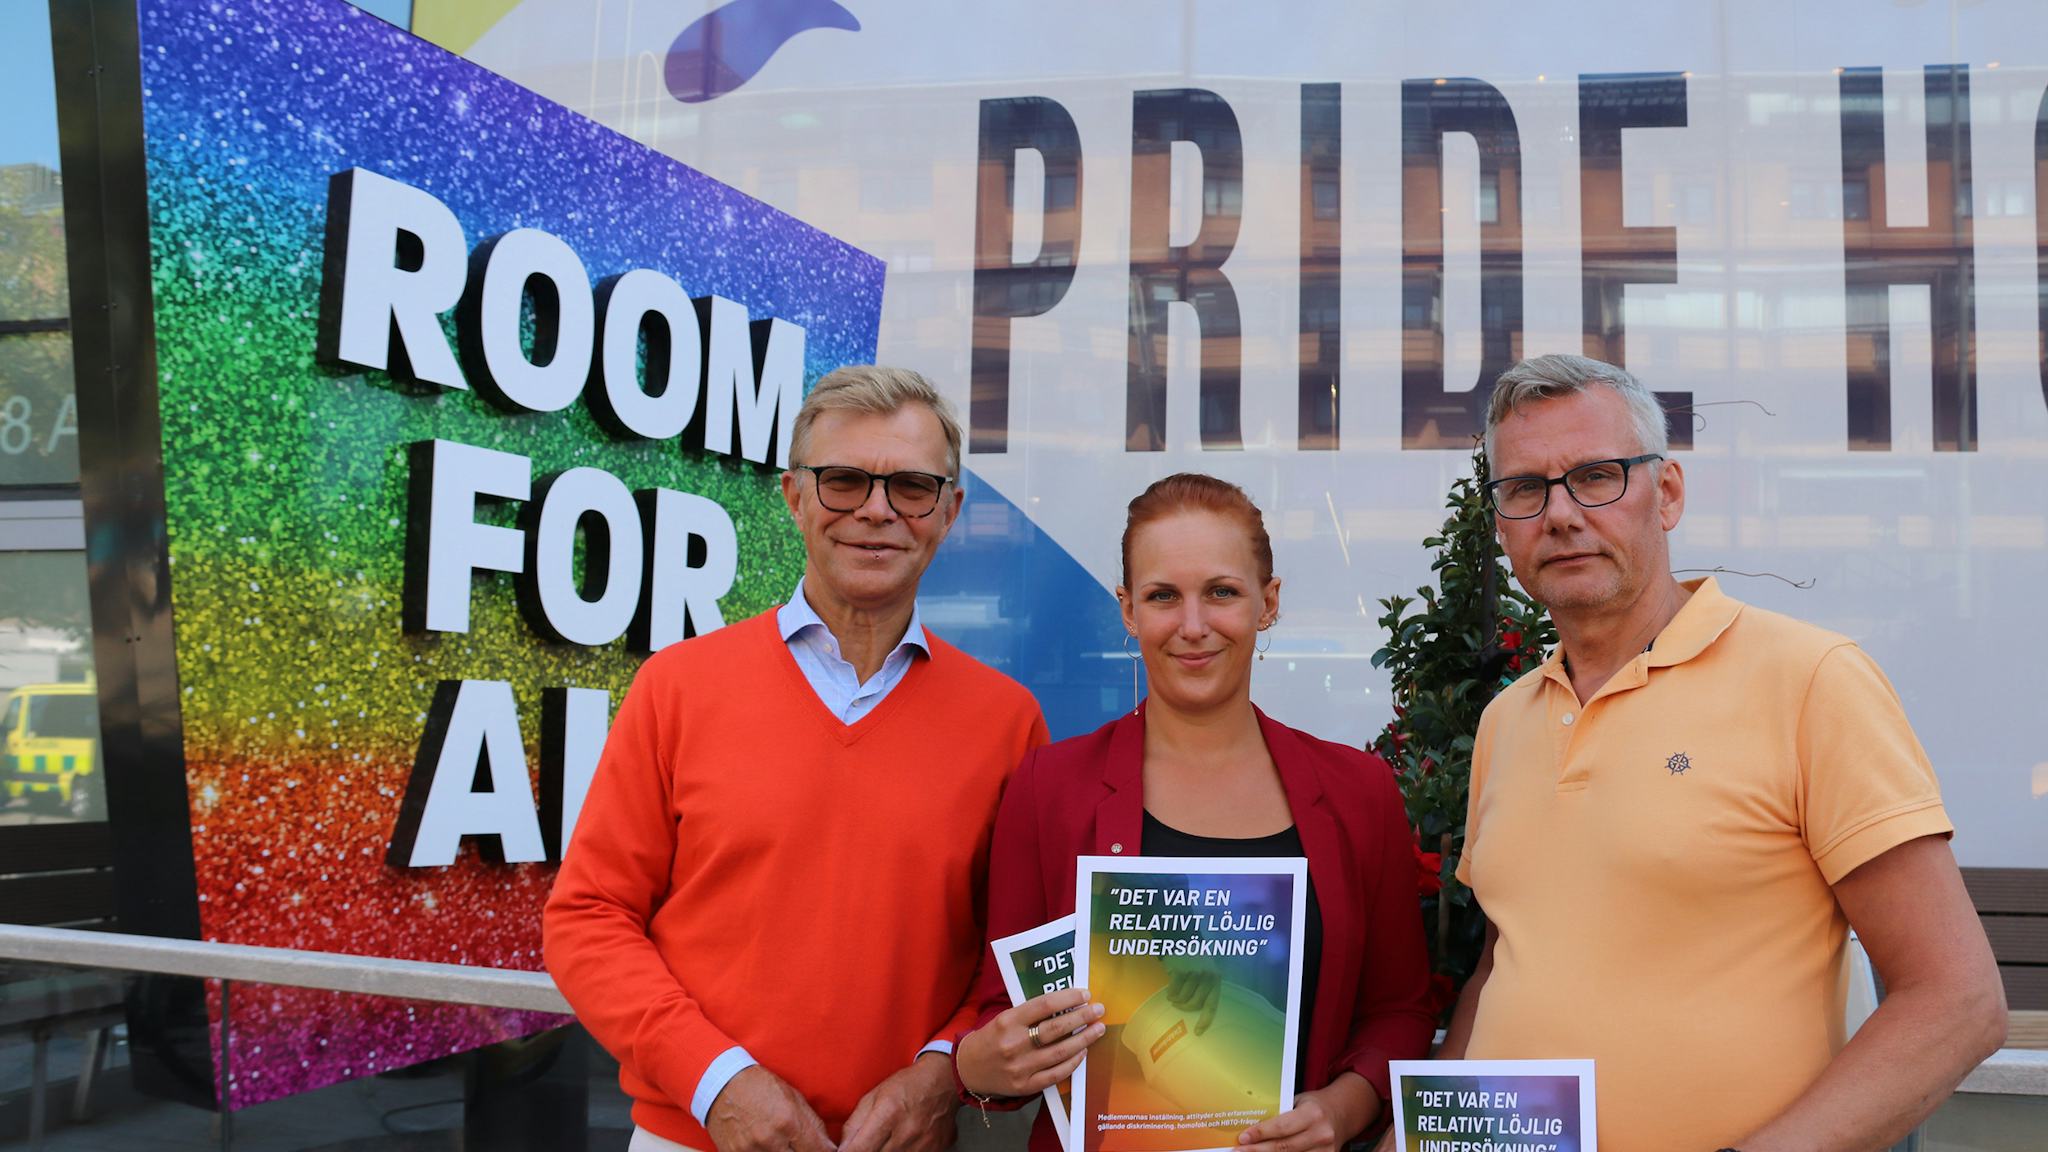 Ola Månsson, Louise Olsson och Per-Håkan Waern står framför en skylt med texten "Room for all", hållande utskrifter av rapporten i artikeln.